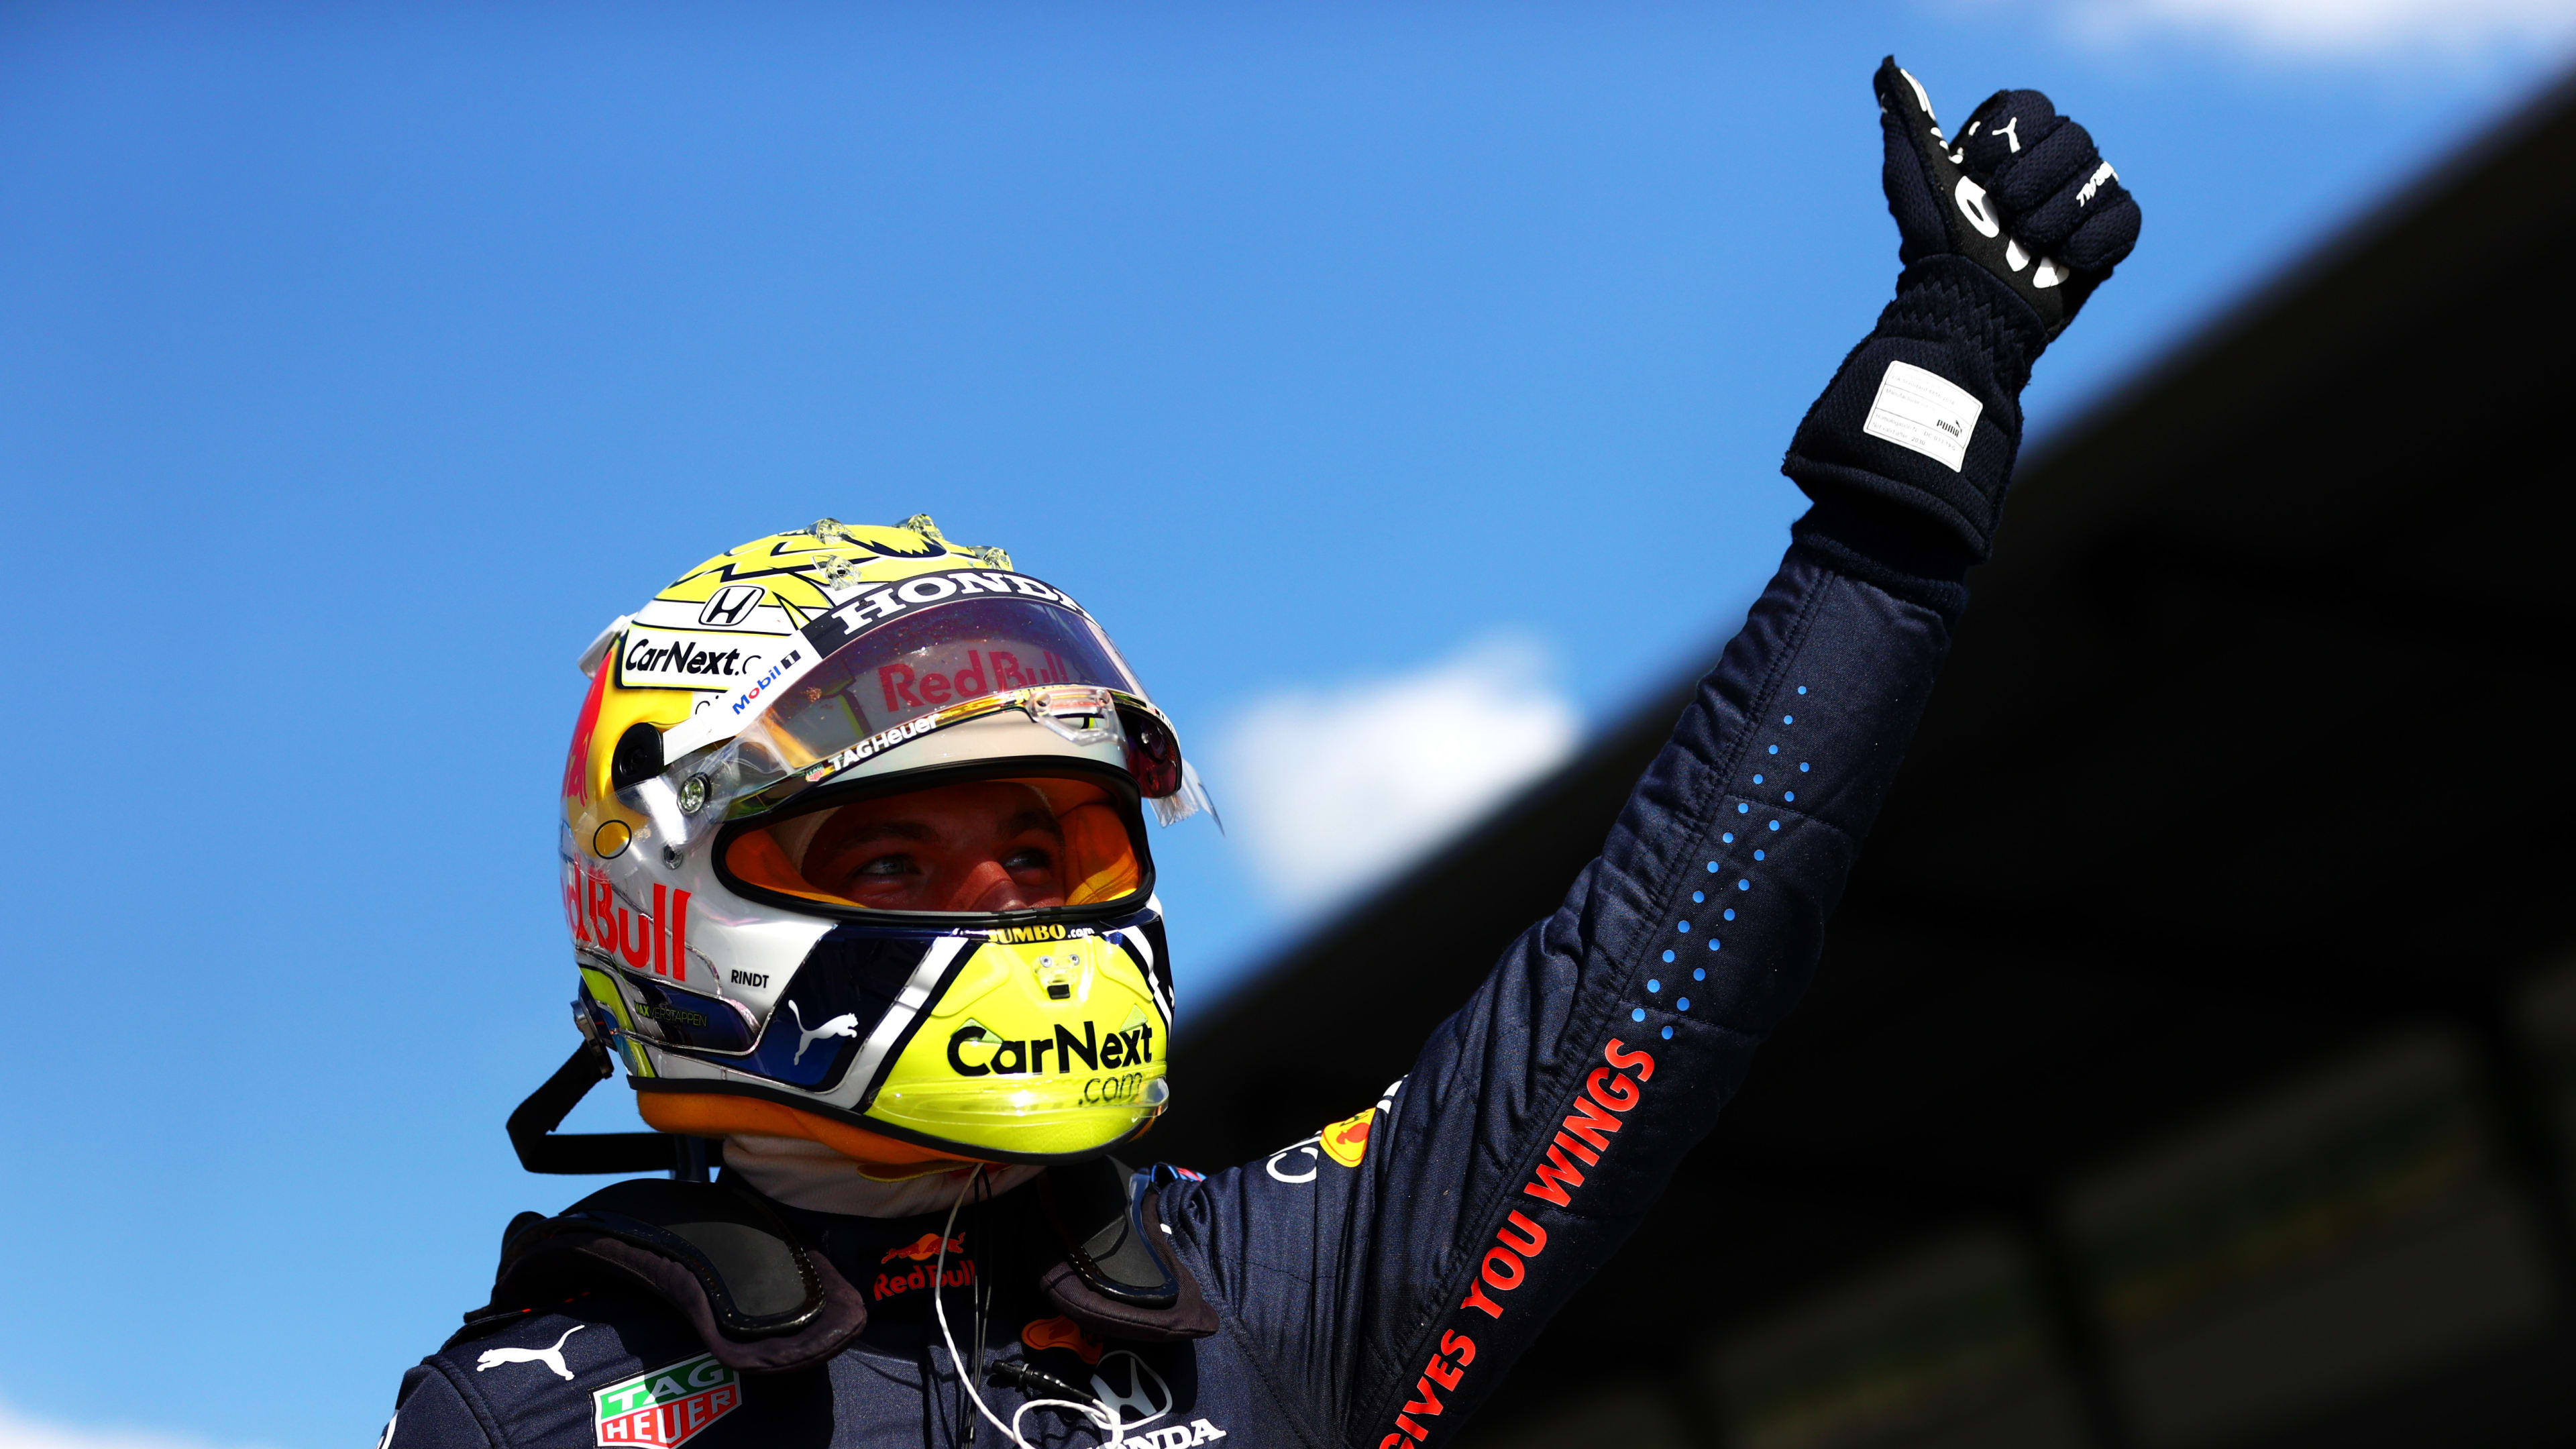 Vòng loại: Verstappen chống lại bộ đôi Mercedes để giành giải Styria Grand Prix cho Red Bull